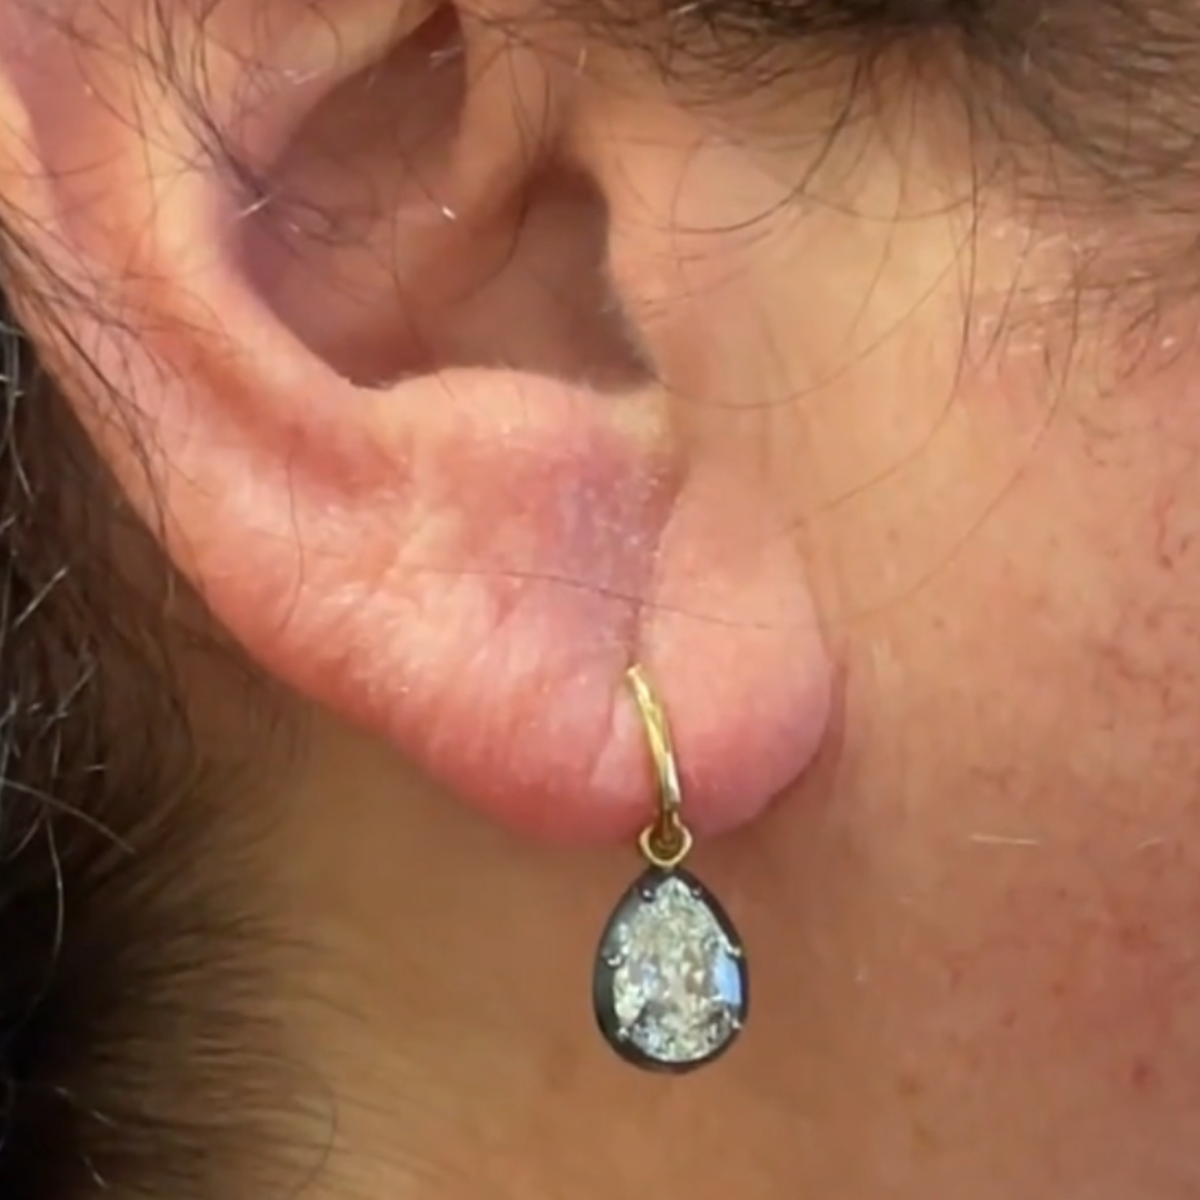 Post-1980s 18KT Blackened Gold Diamond Drop Earrings worn on ear